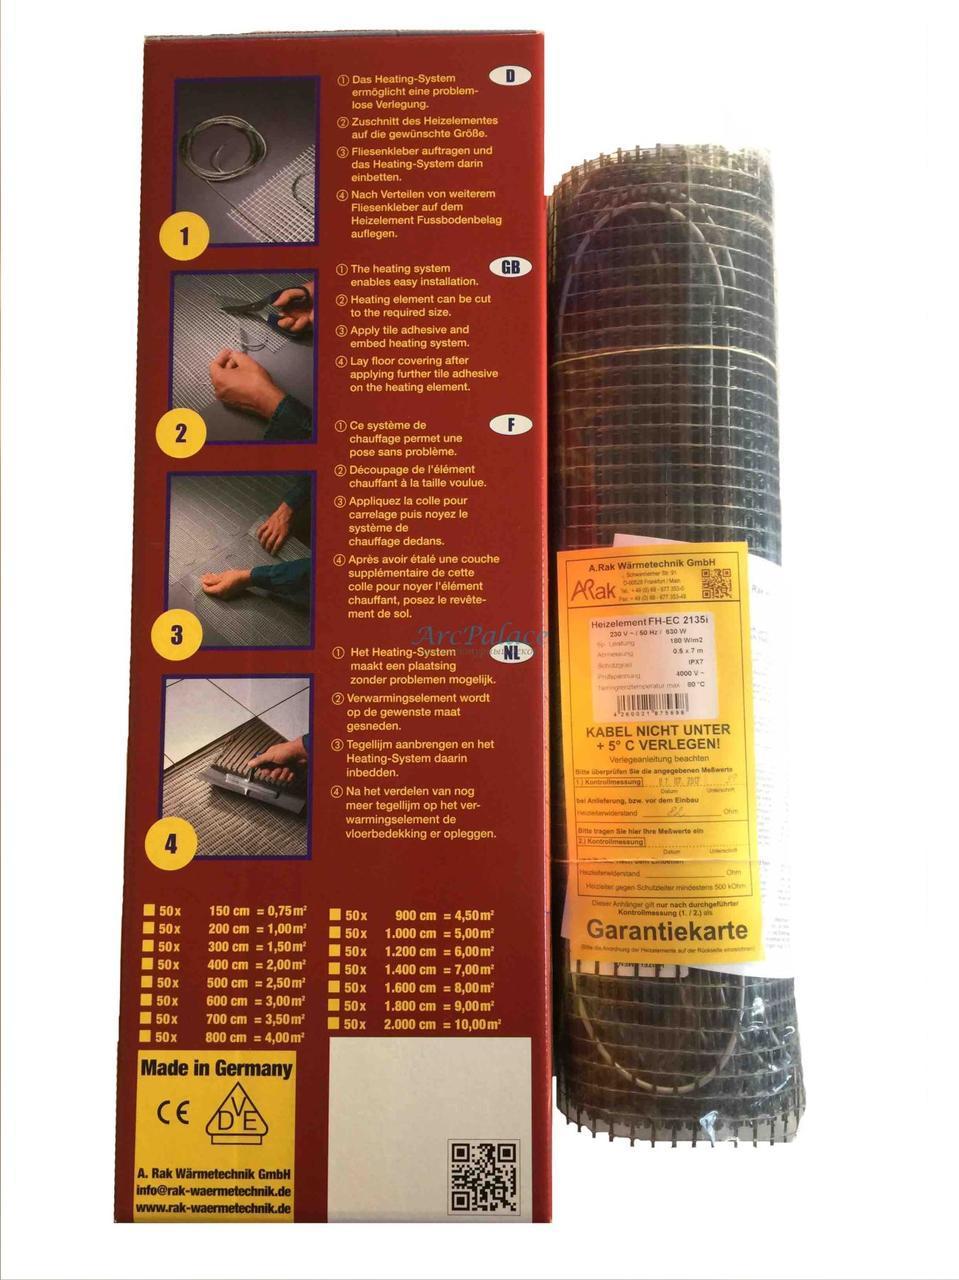 Электрический теплый пол Arnold Rak FH-EC 21150 в интернет-магазине, главное фото